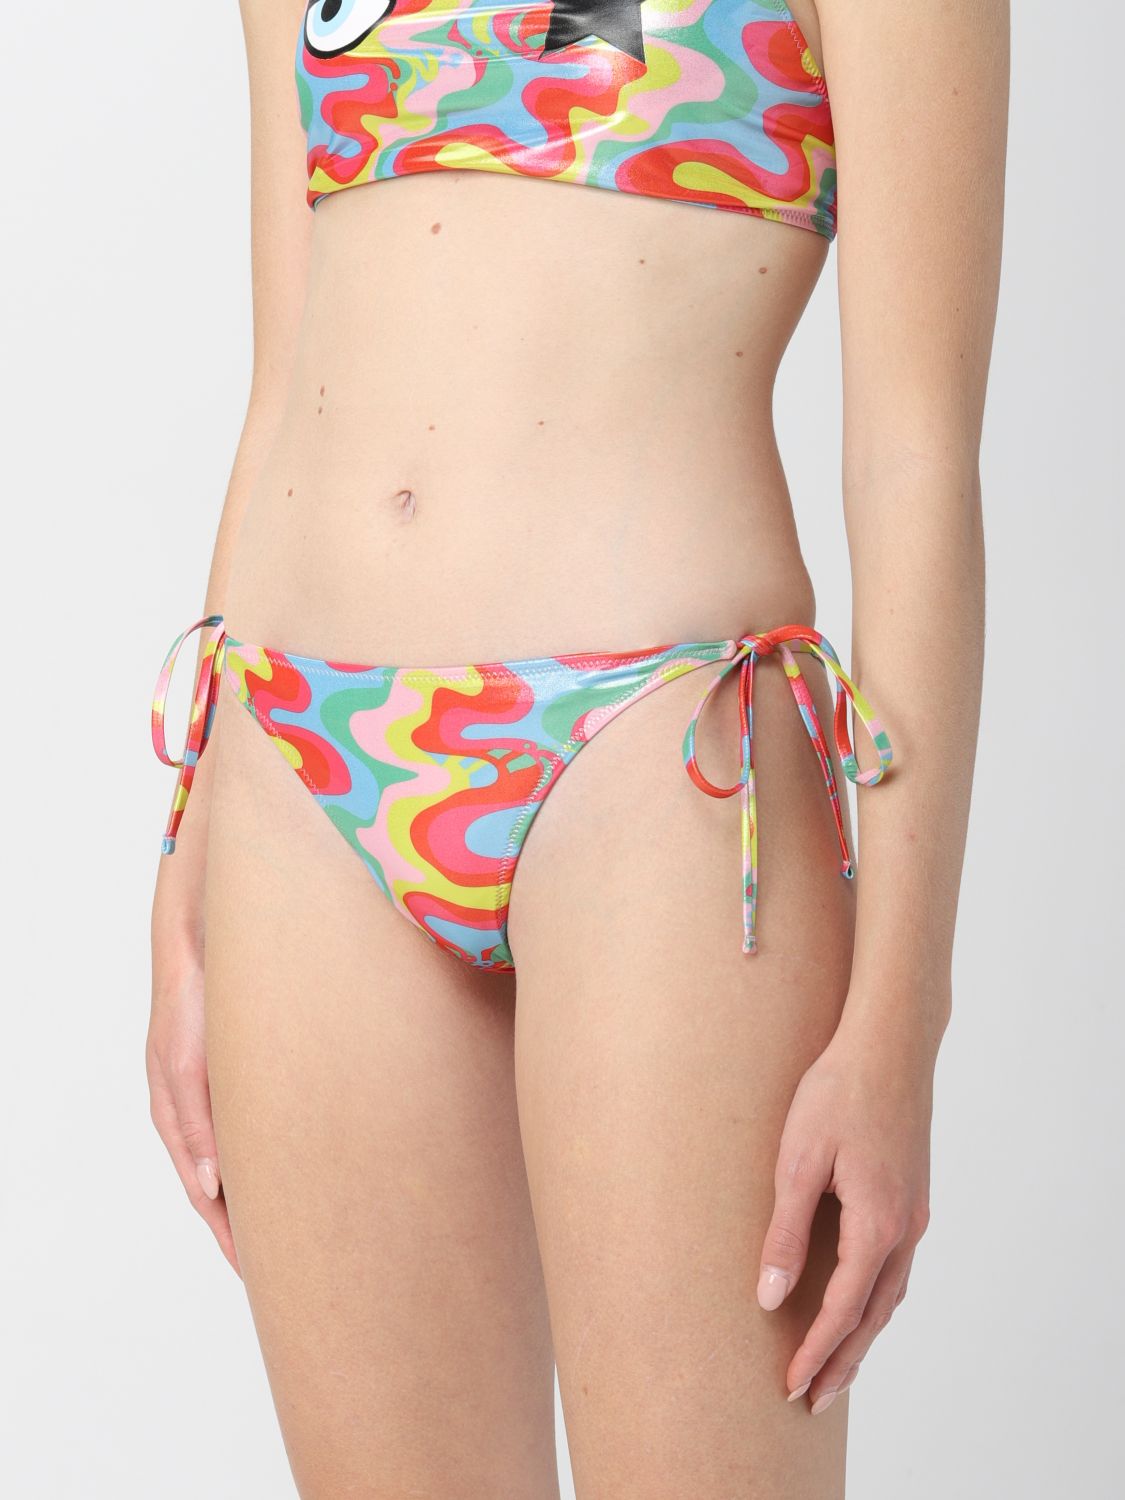 Sea clothing Chiara Ferragni en coloris Rose Femme Vêtements Articles de plage et maillots de bain Bikinis et maillots de bain 